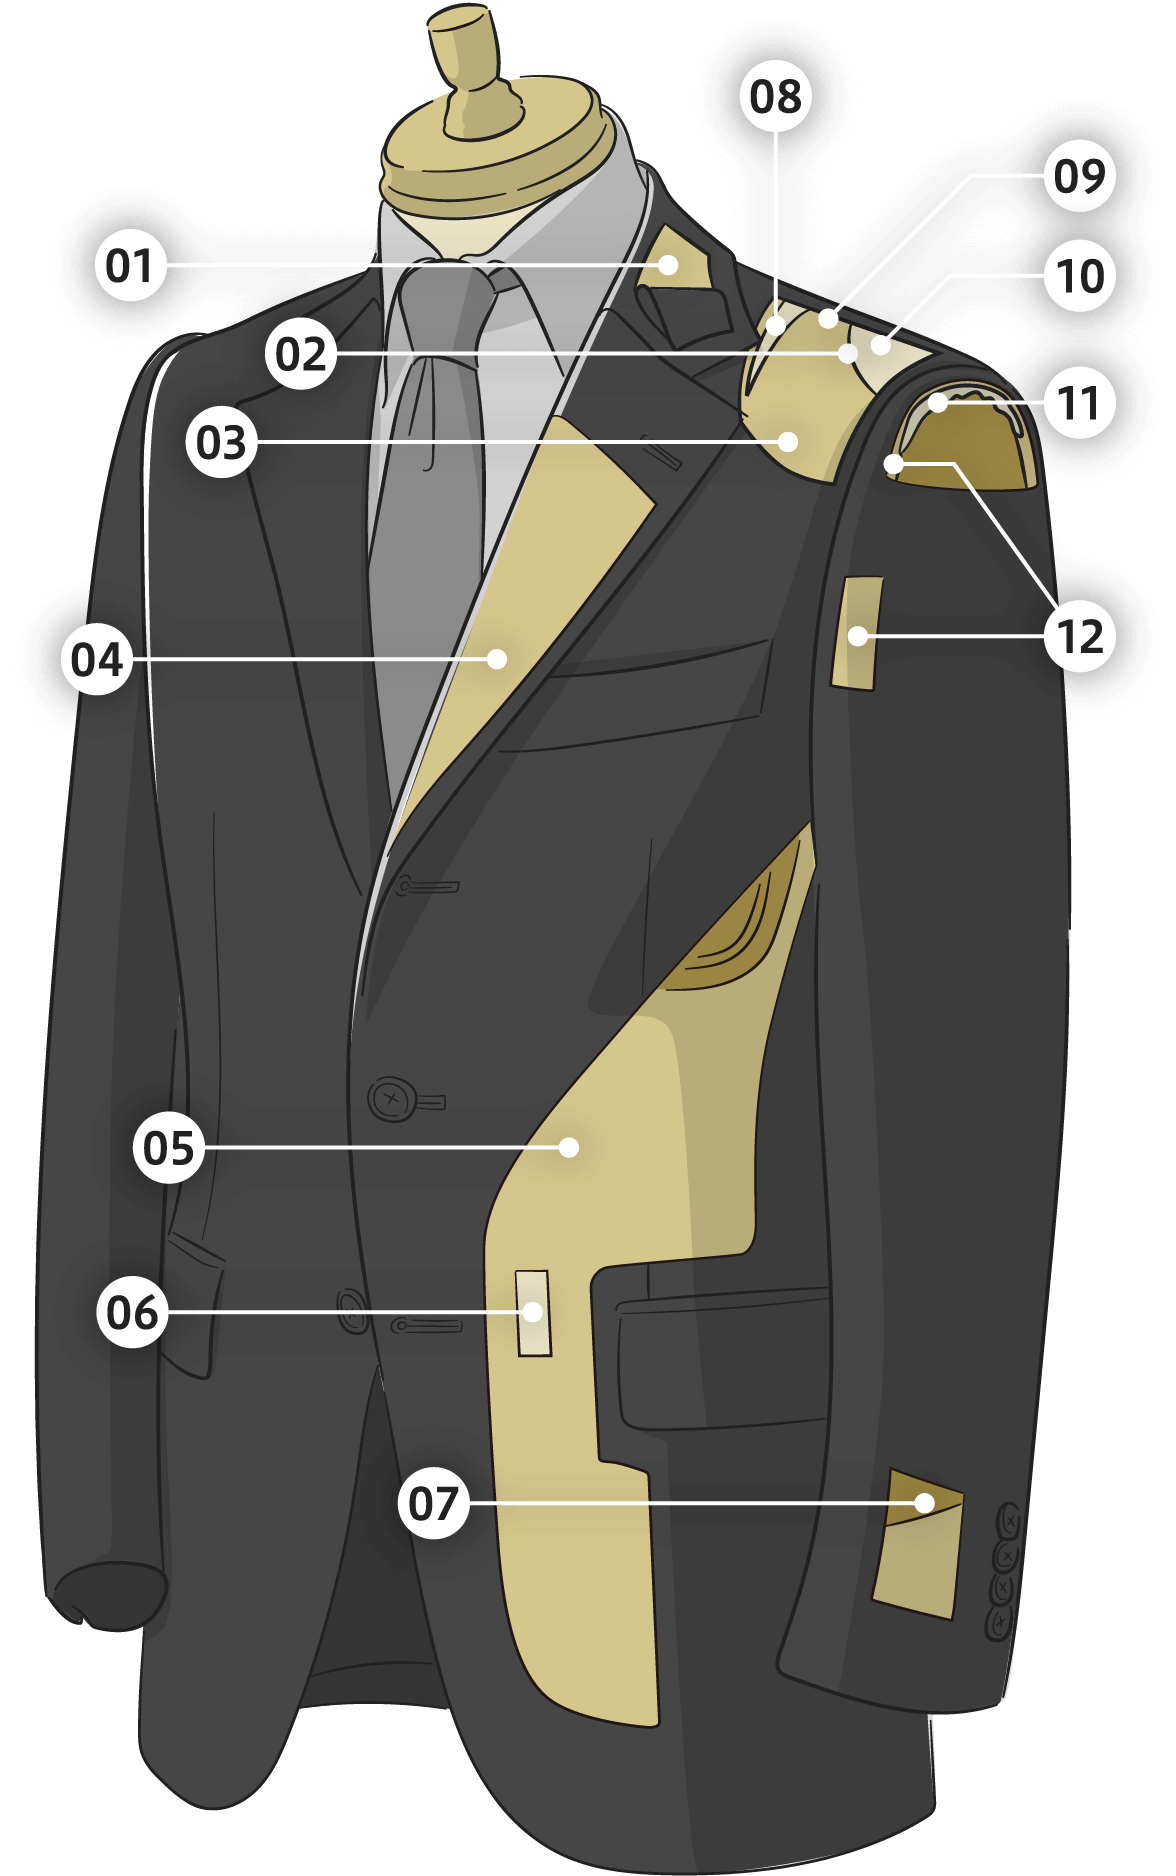 スーツの仕立てに関する各部位の説明